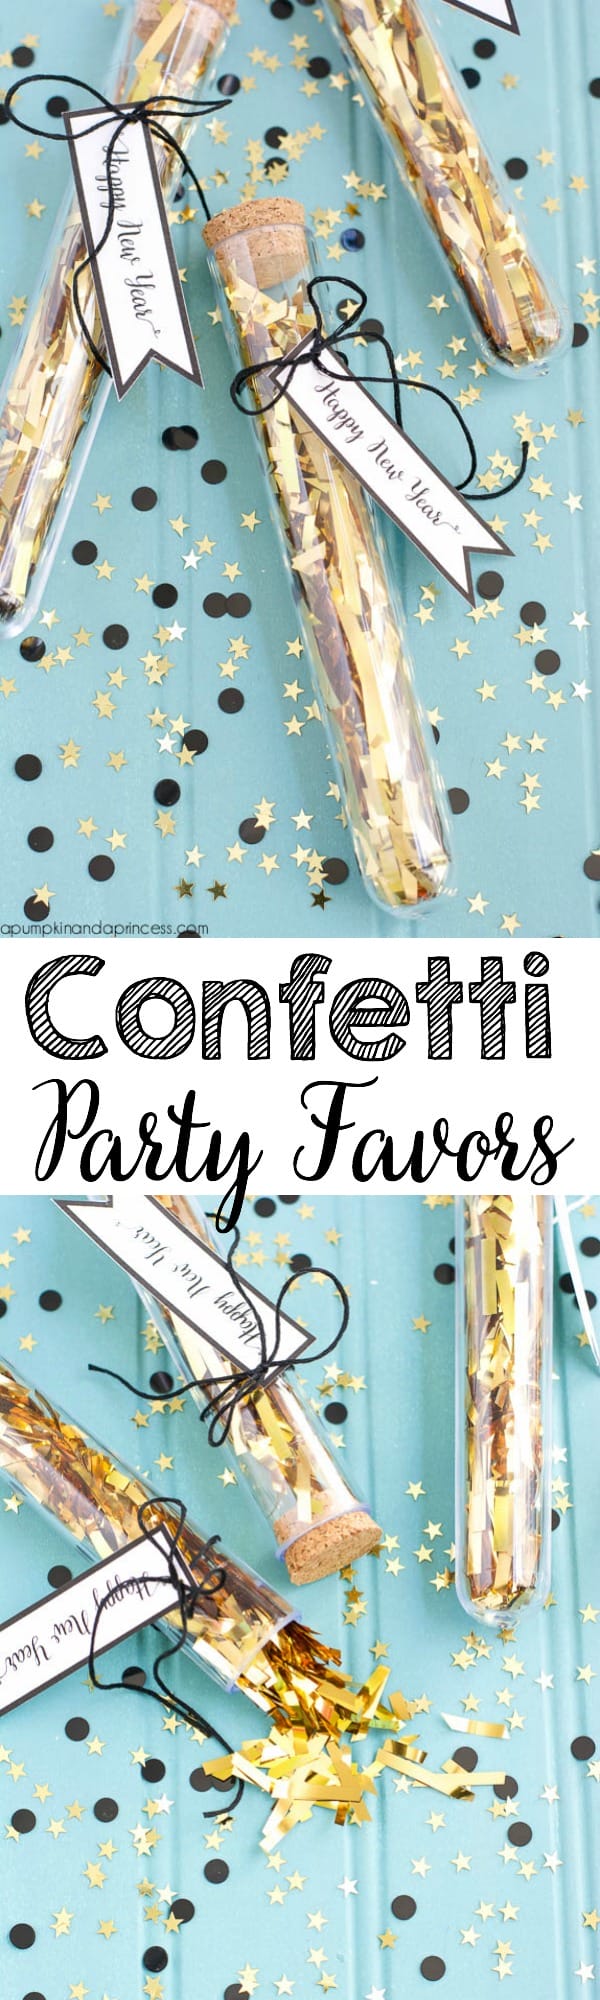 Confetti-Party-Favors1